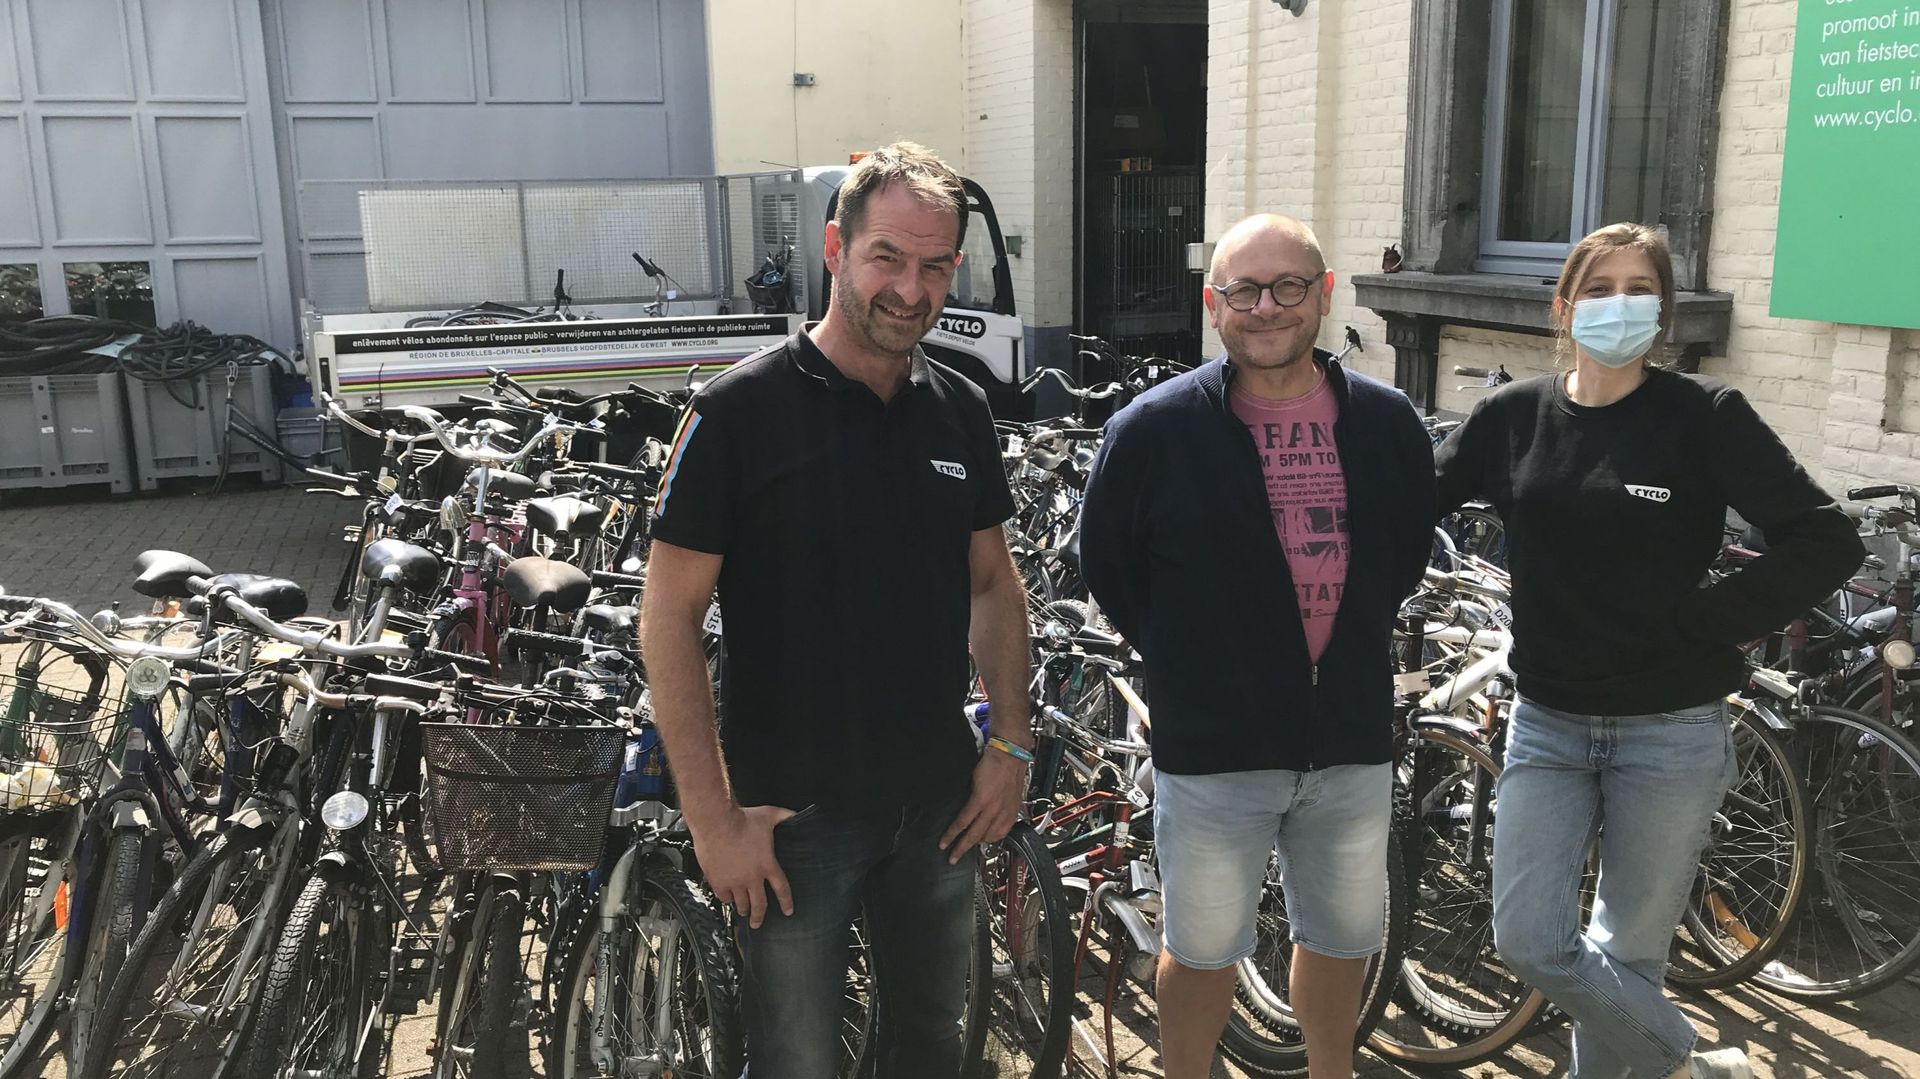 Michaël, Eric et Caroline, une partie de l'équipe de l'ASBL Cyclo devant une partie des vélos en "résidence" dans leur dépôt-atelier de Schaerbeek